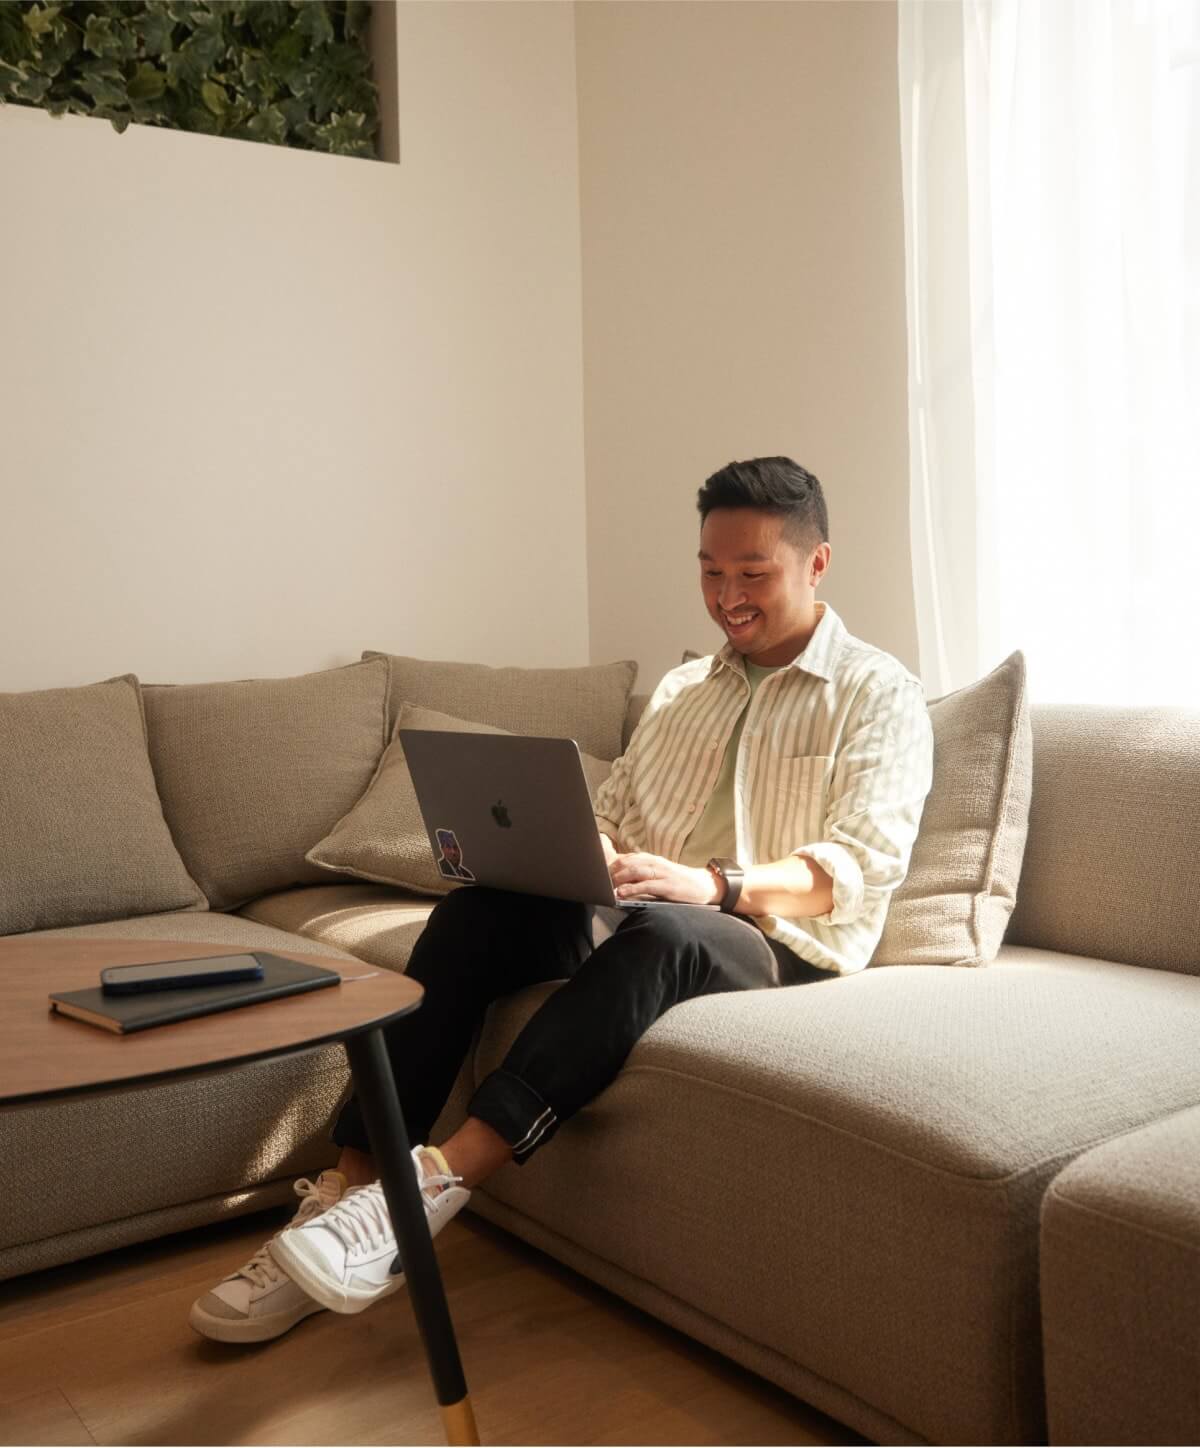 Heureux de travailler à domicile : une personne souriante travaillant sur son divan, mettant en valeur la productivité et le confort dans un environnement de travail à distance